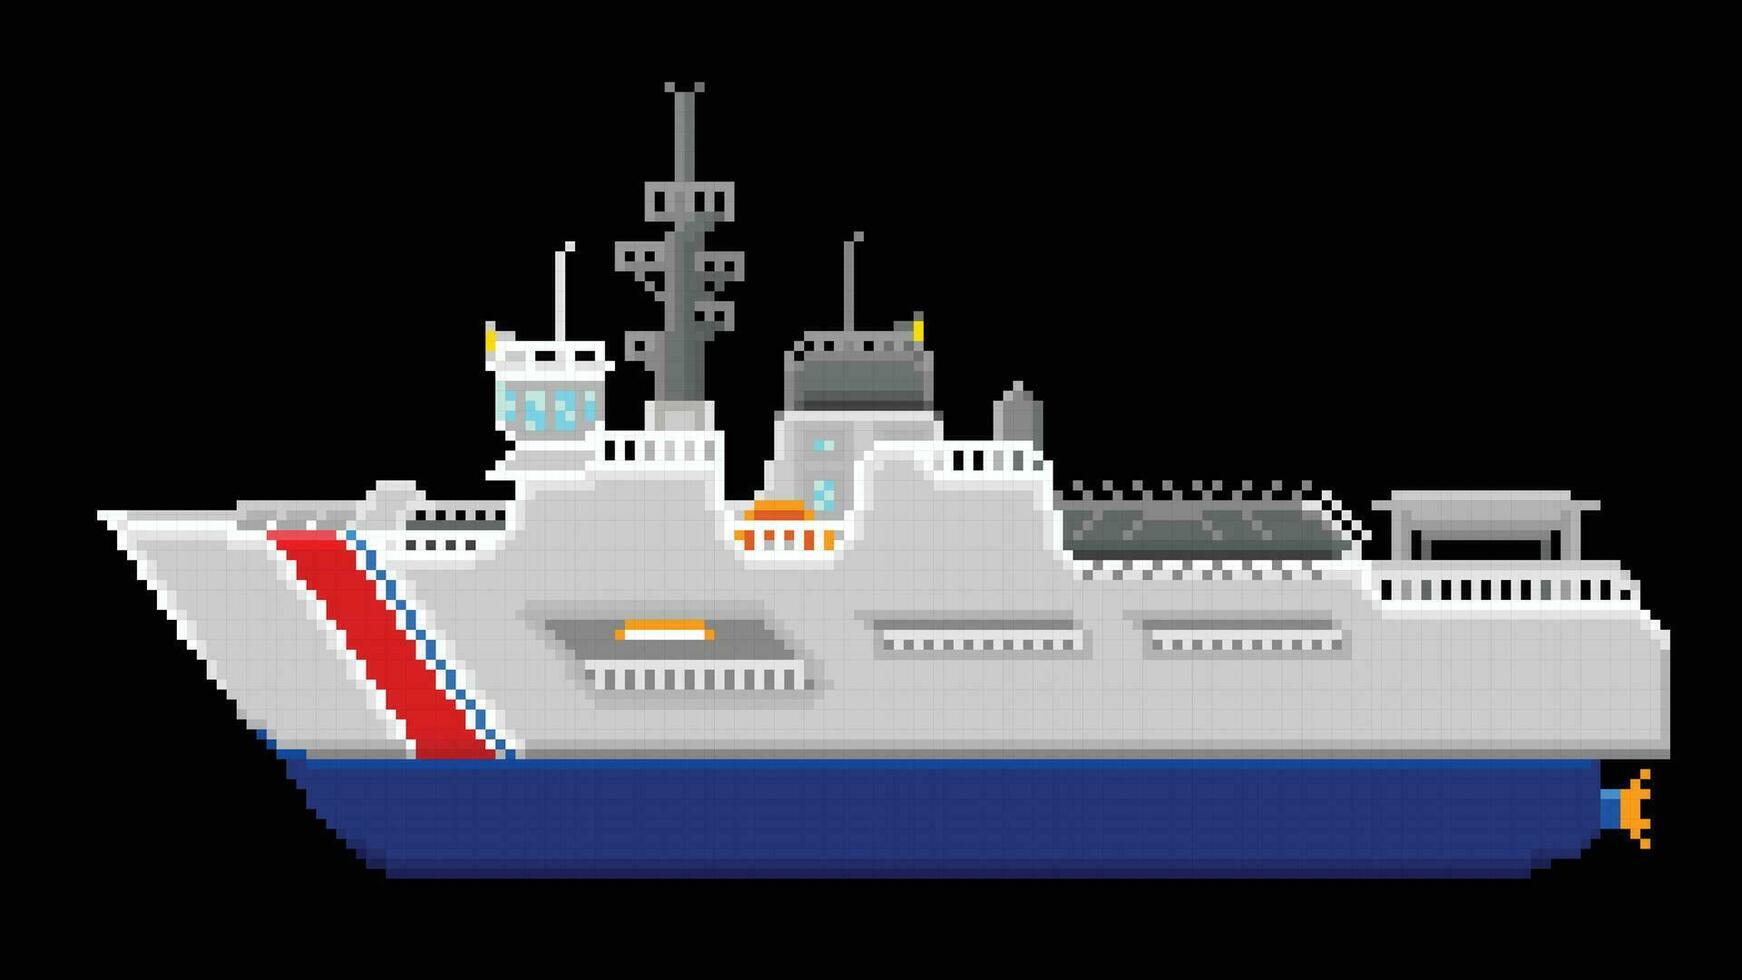 A Coast Guard Ship designed in 8 bit pixel. a Ship Pixel art illustration. vector